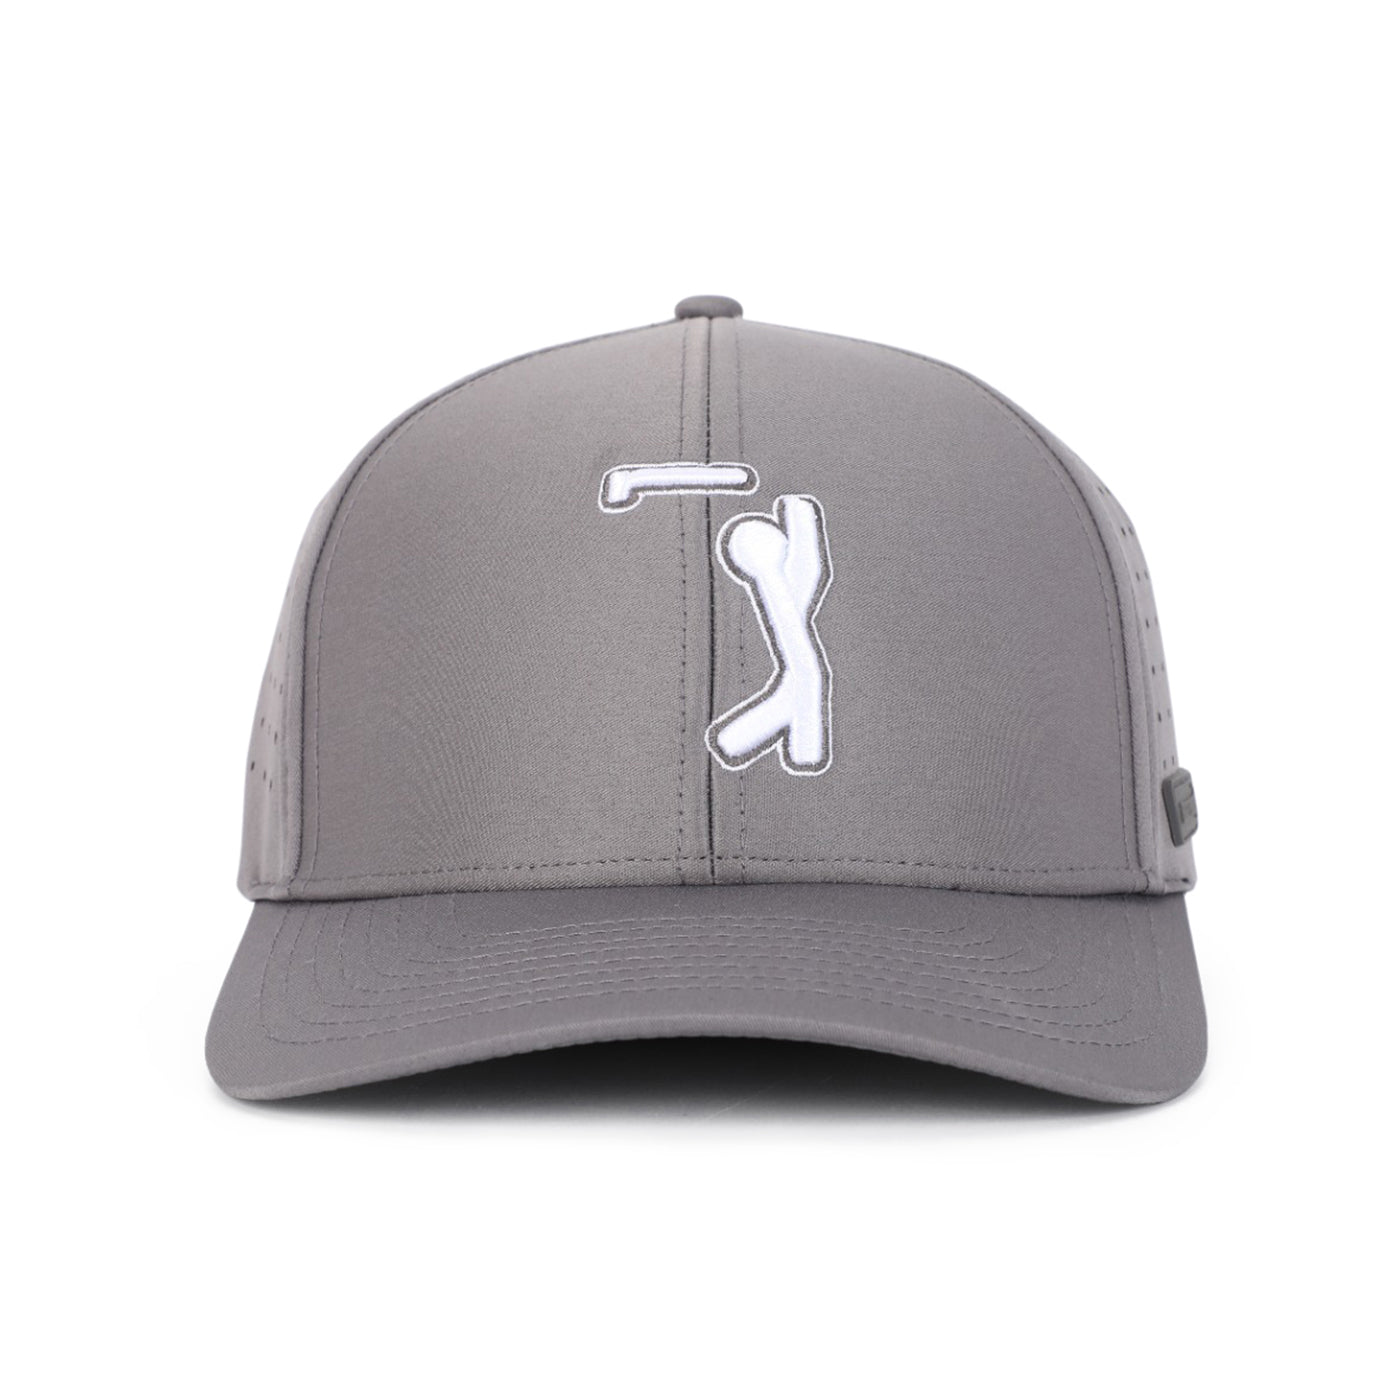 Bogeyman Dark Grey - Performance Golf Hat - Stretch Fit